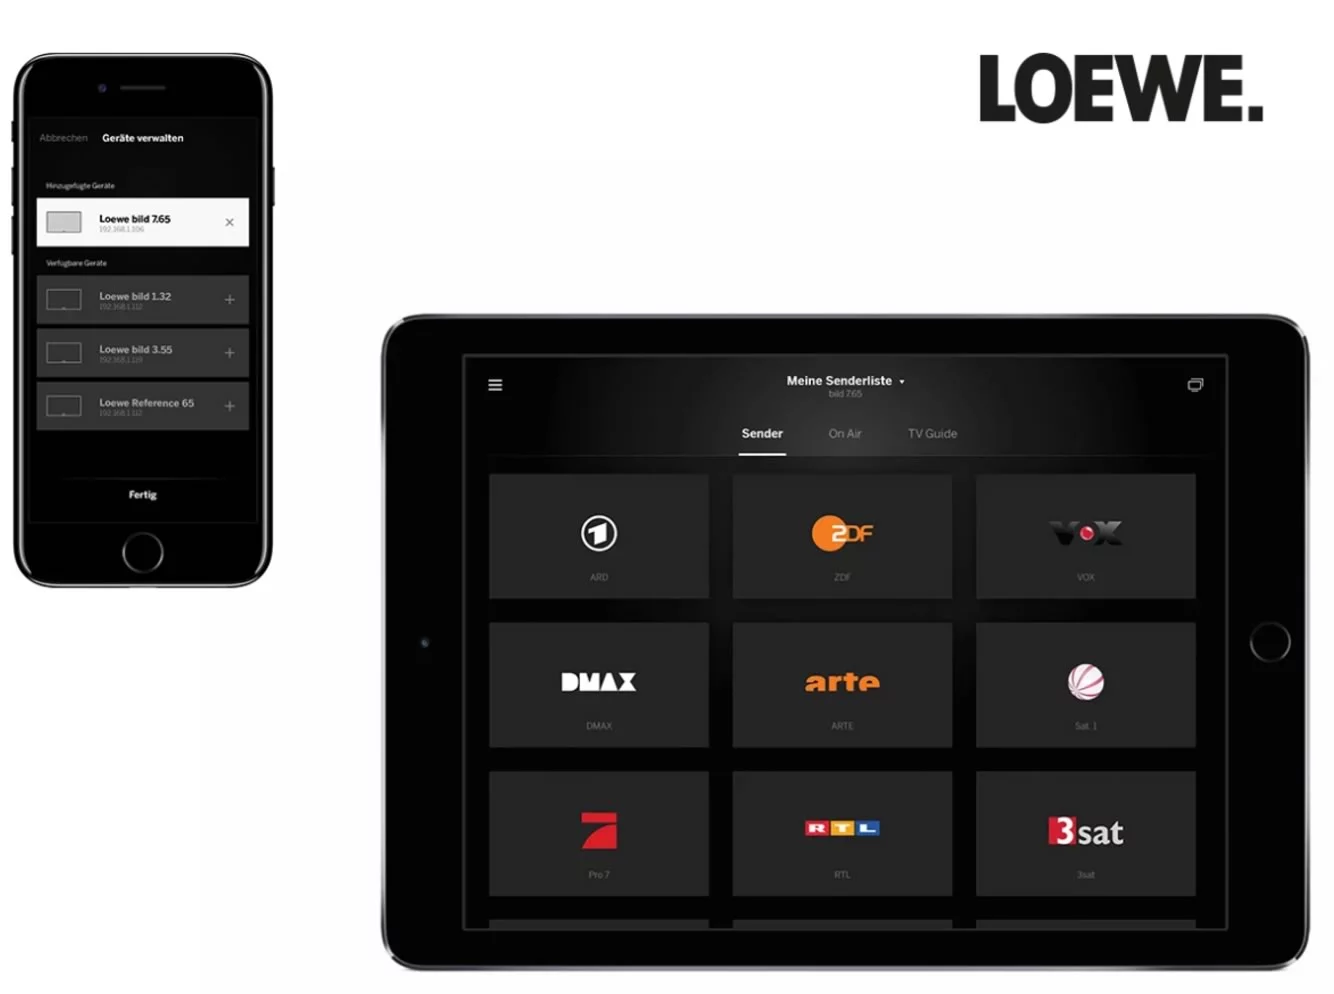 Loewe app